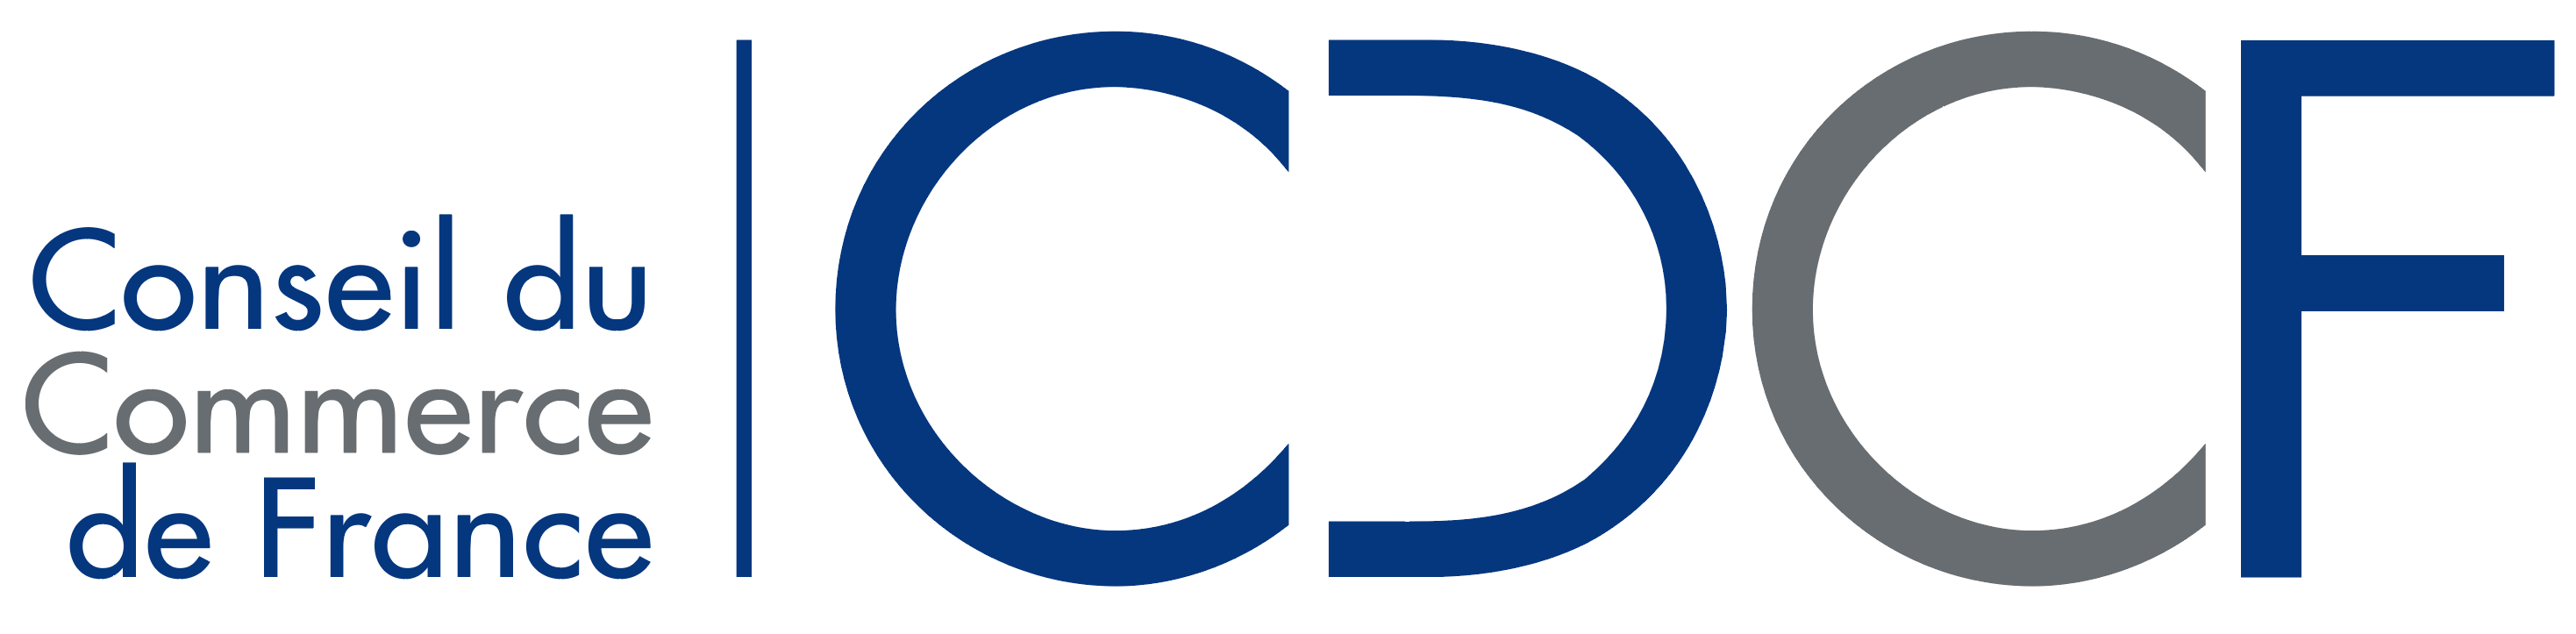 LogoCDCF